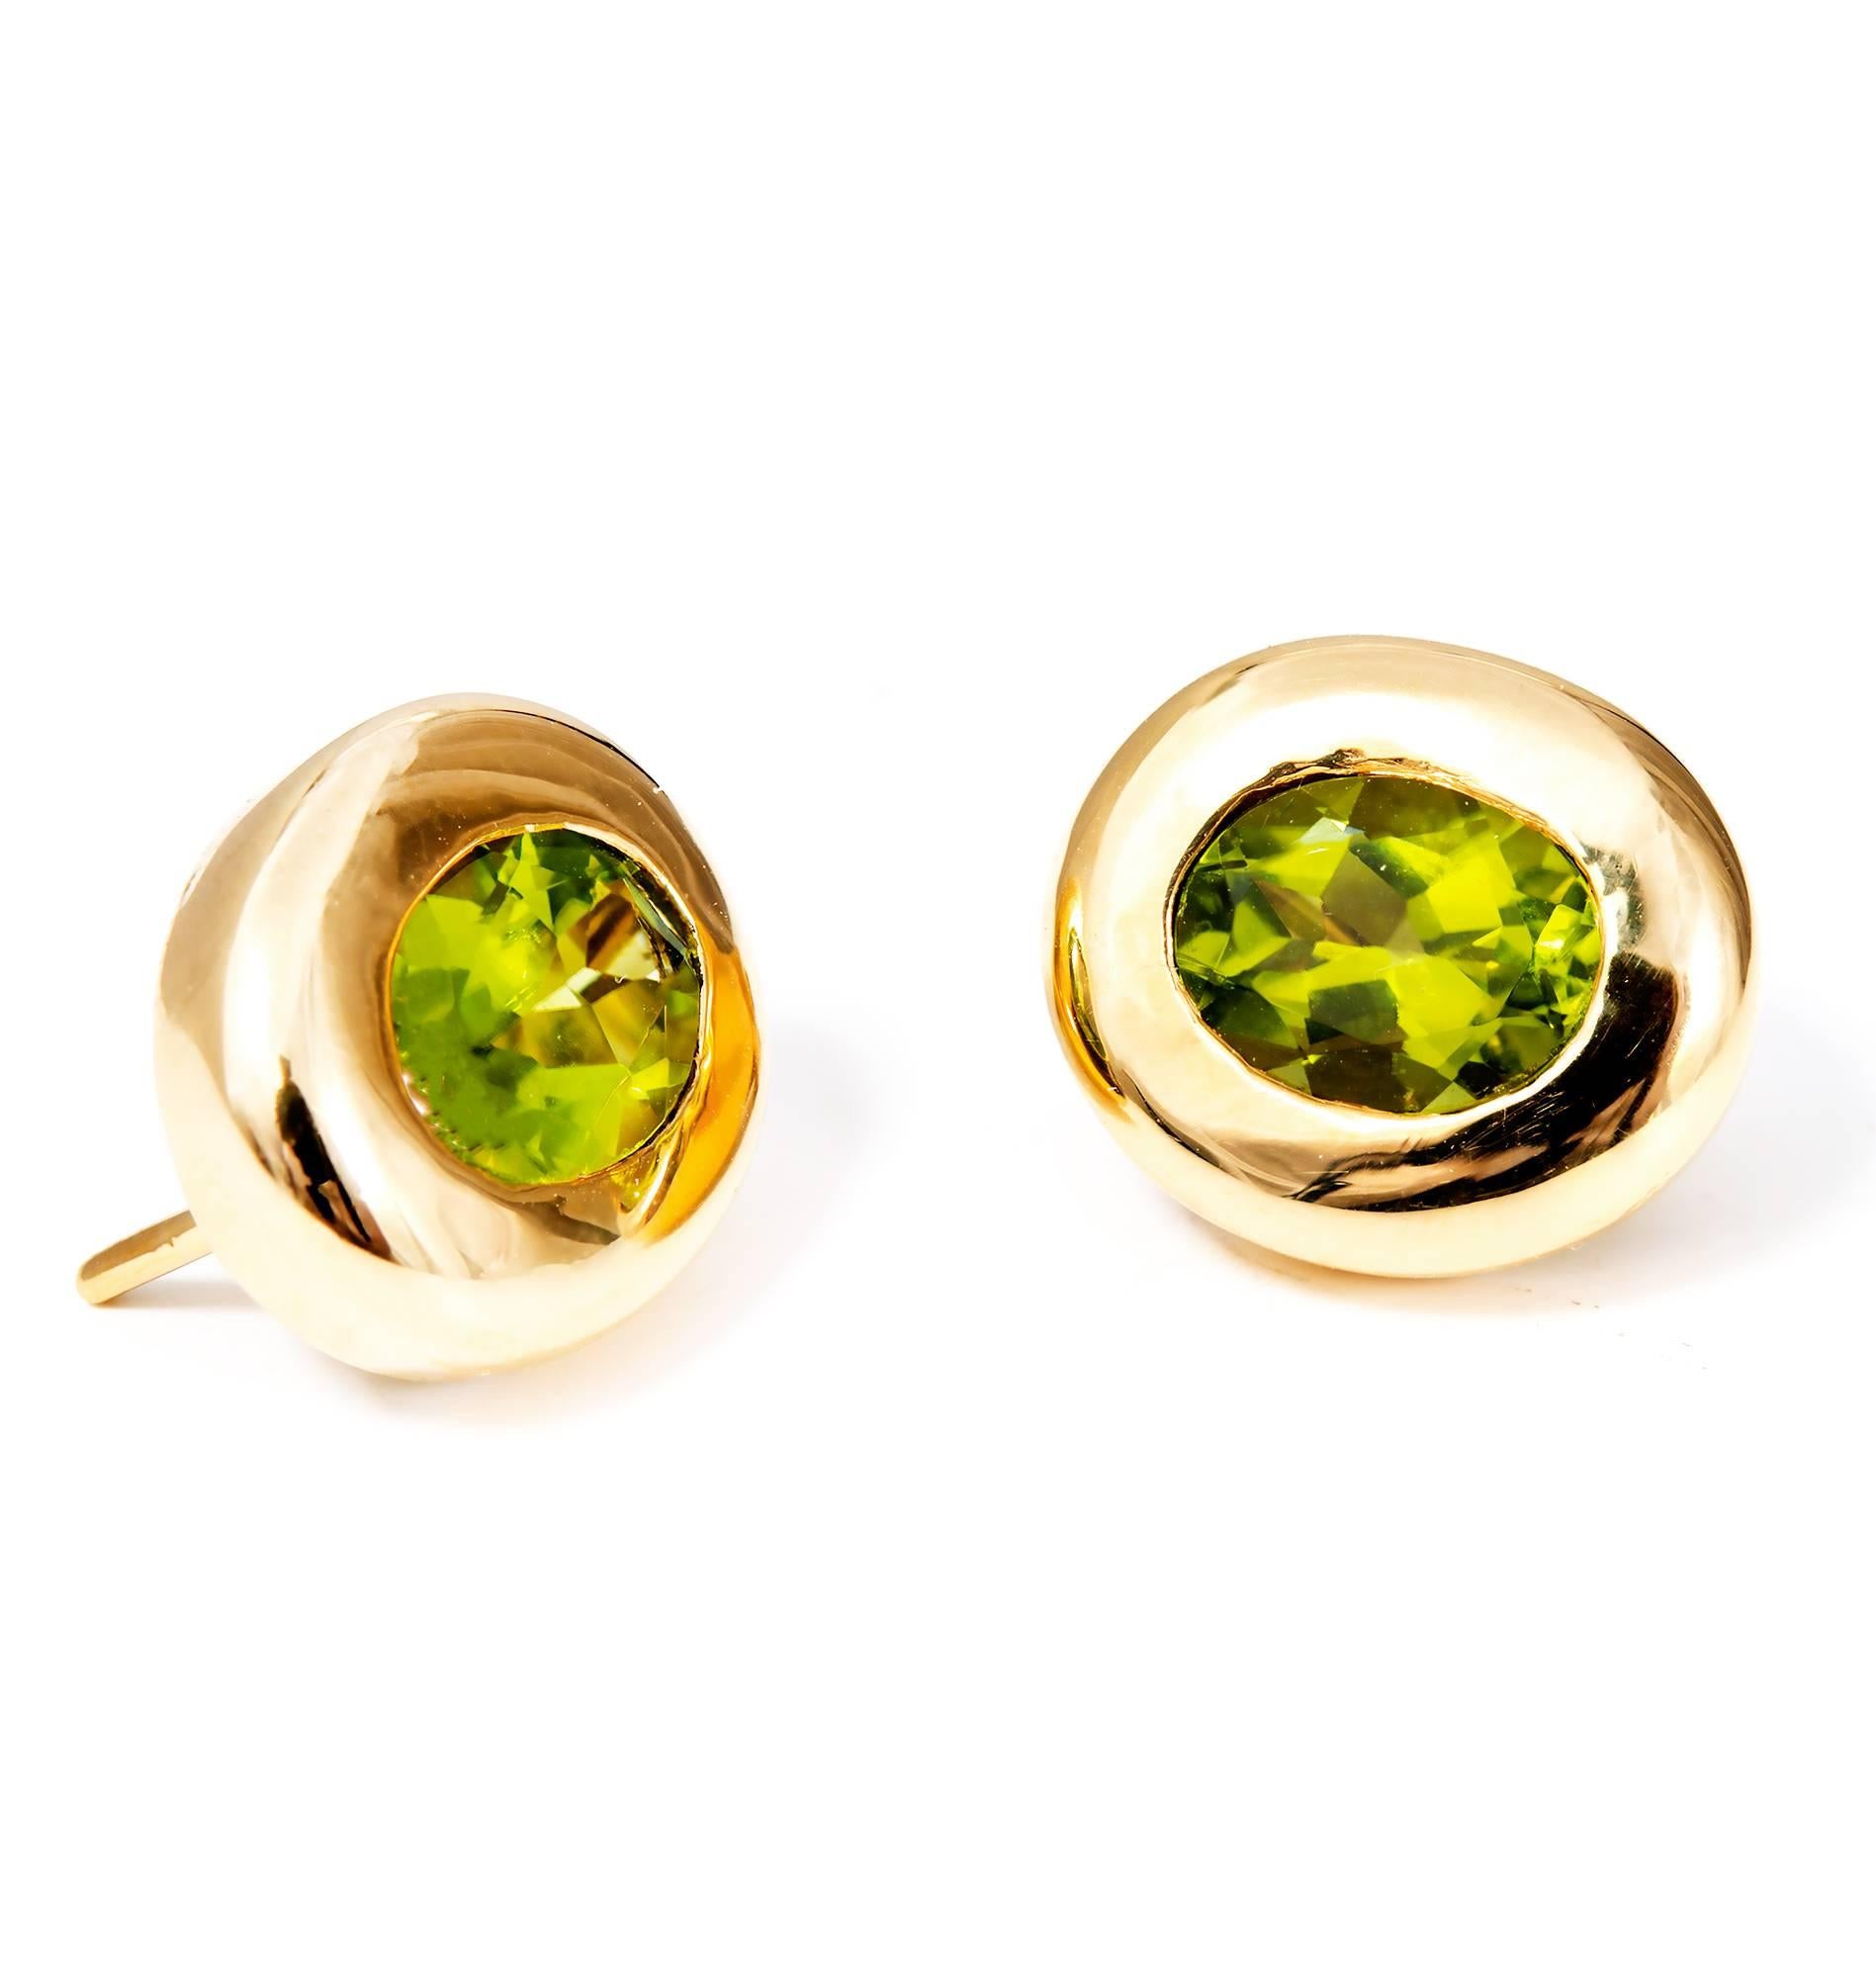 Oval Cut 4.10 Carat Oval Green Peridot Domed Gold Bezel Stud Earrings